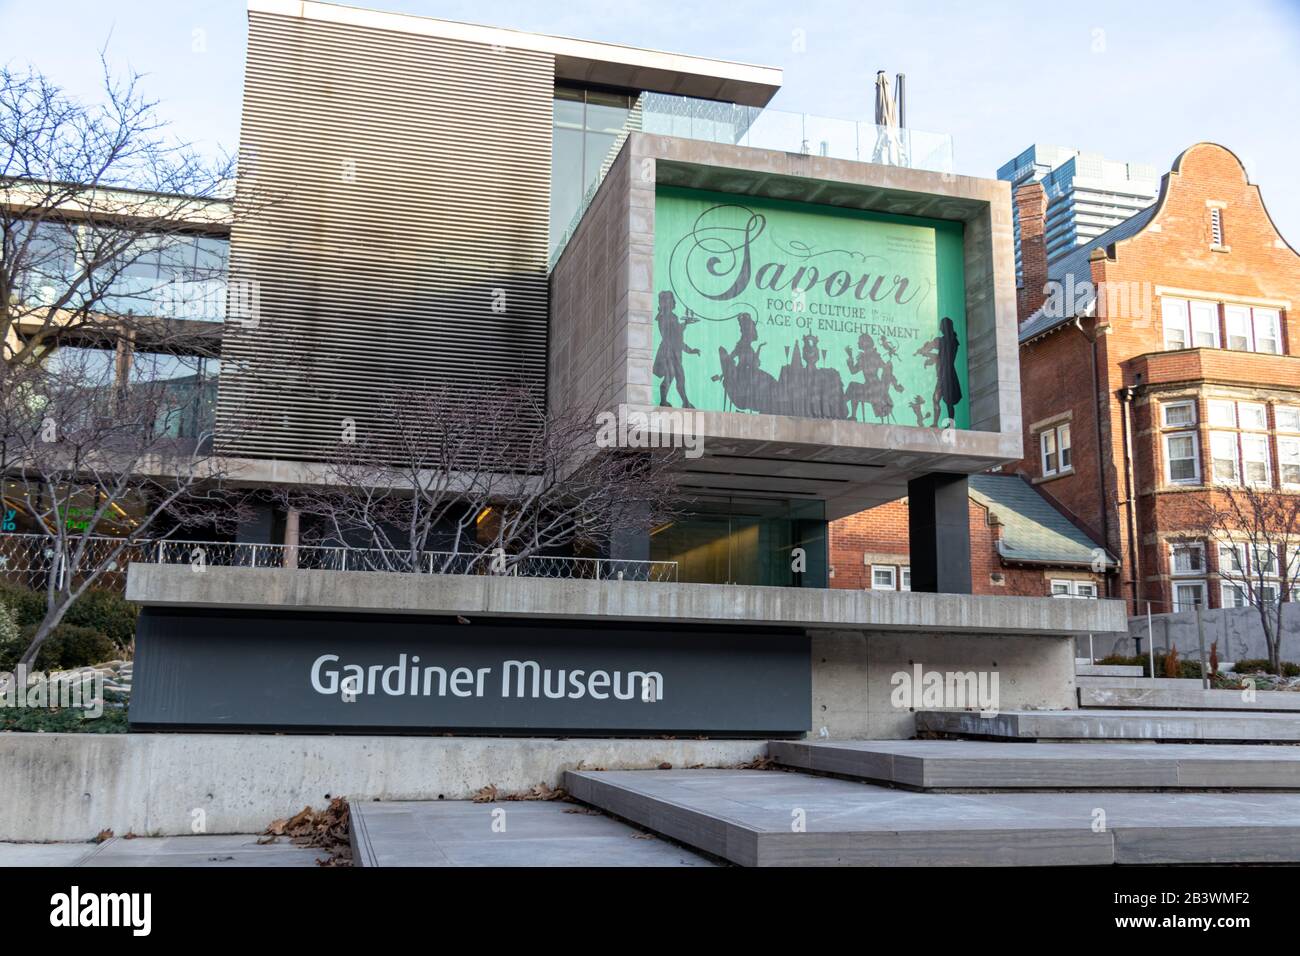 Entrée principale du musée Gardiner, musée dédié à l'art céramique du centre-ville de Toronto. Banque D'Images